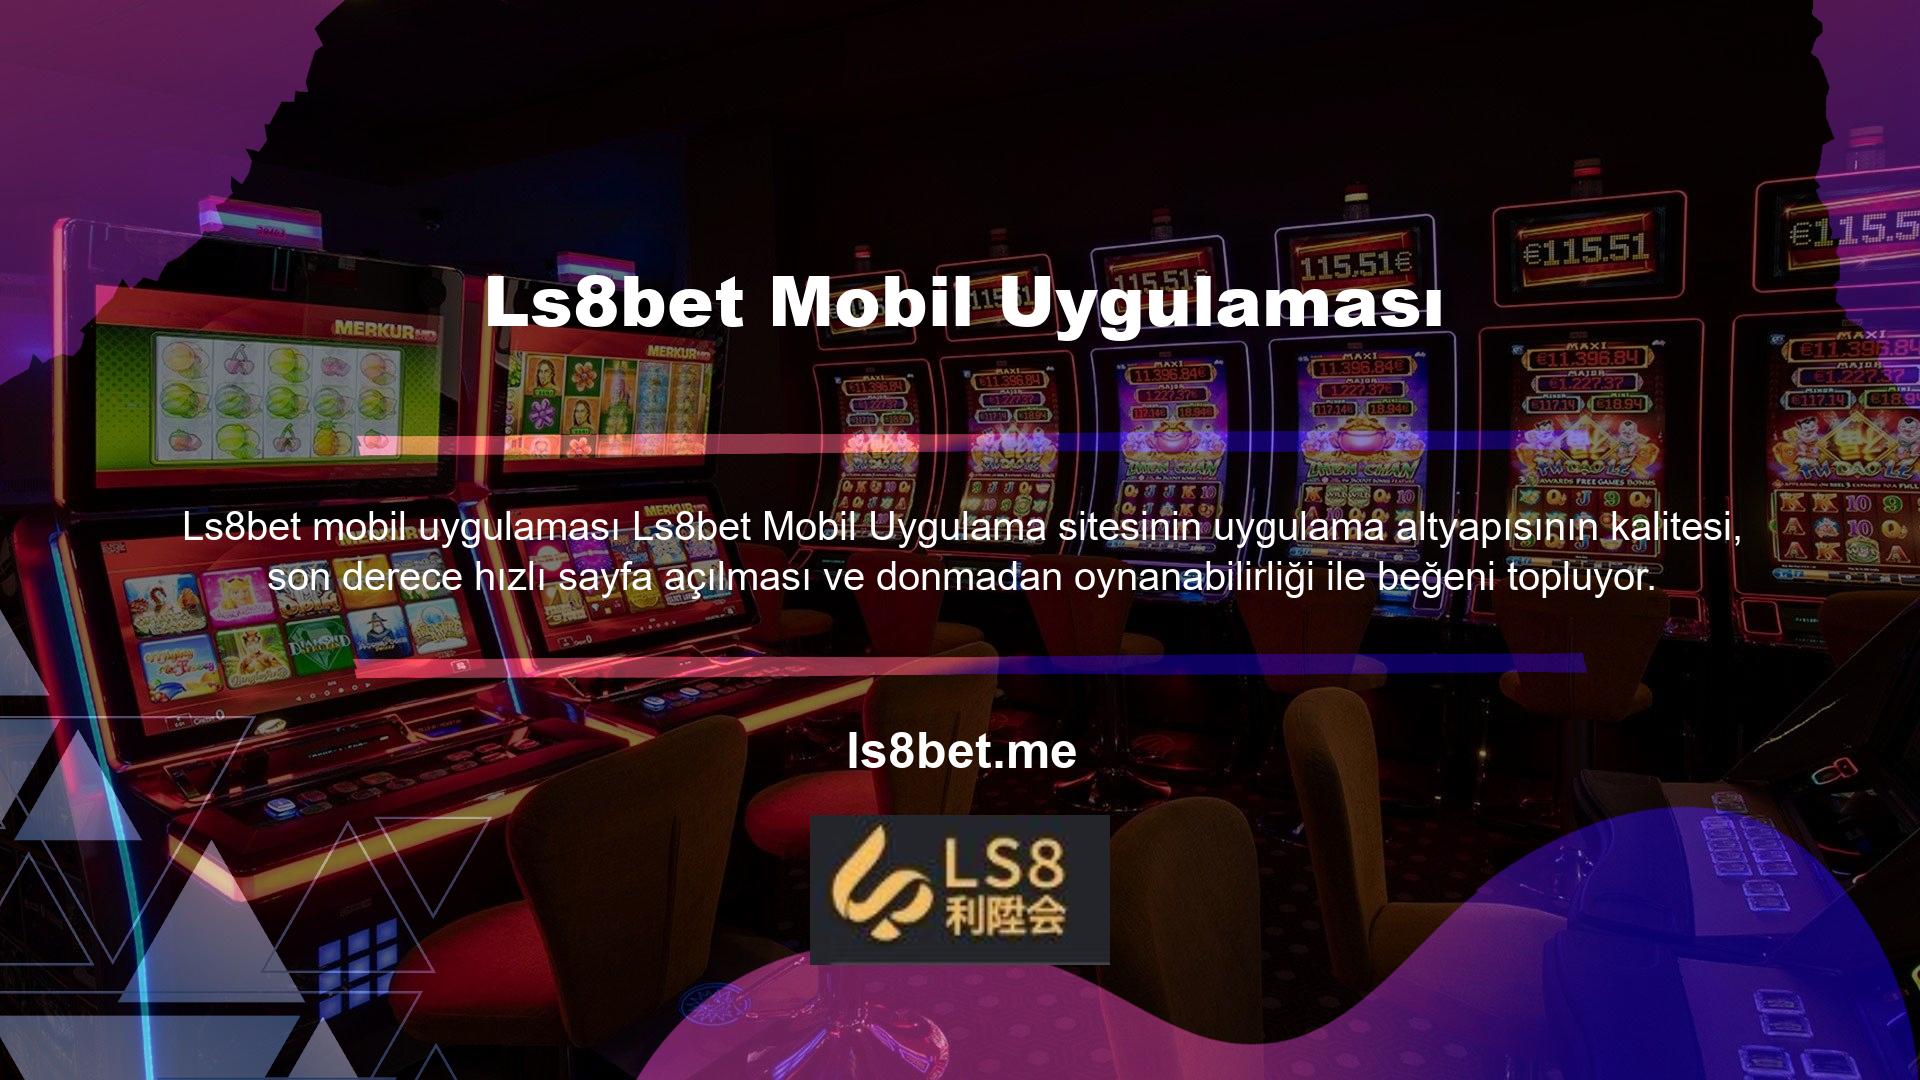 Aynı şekilde Ls8bet mobil uygulaması üzerinden de tüm bahis ürünlerine ve oyun çeşitlerine ulaşılabilmekte ve kullanılabilmektedir